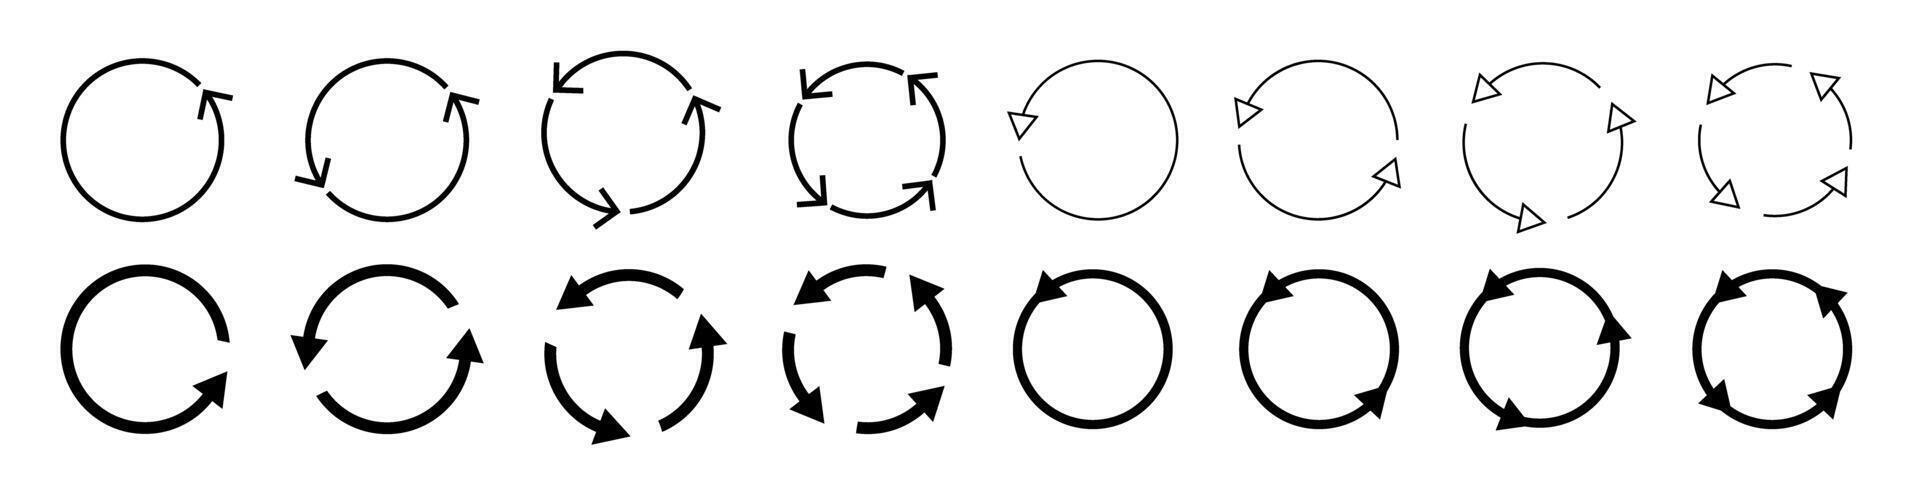 Circle arrow icon set. circular vector